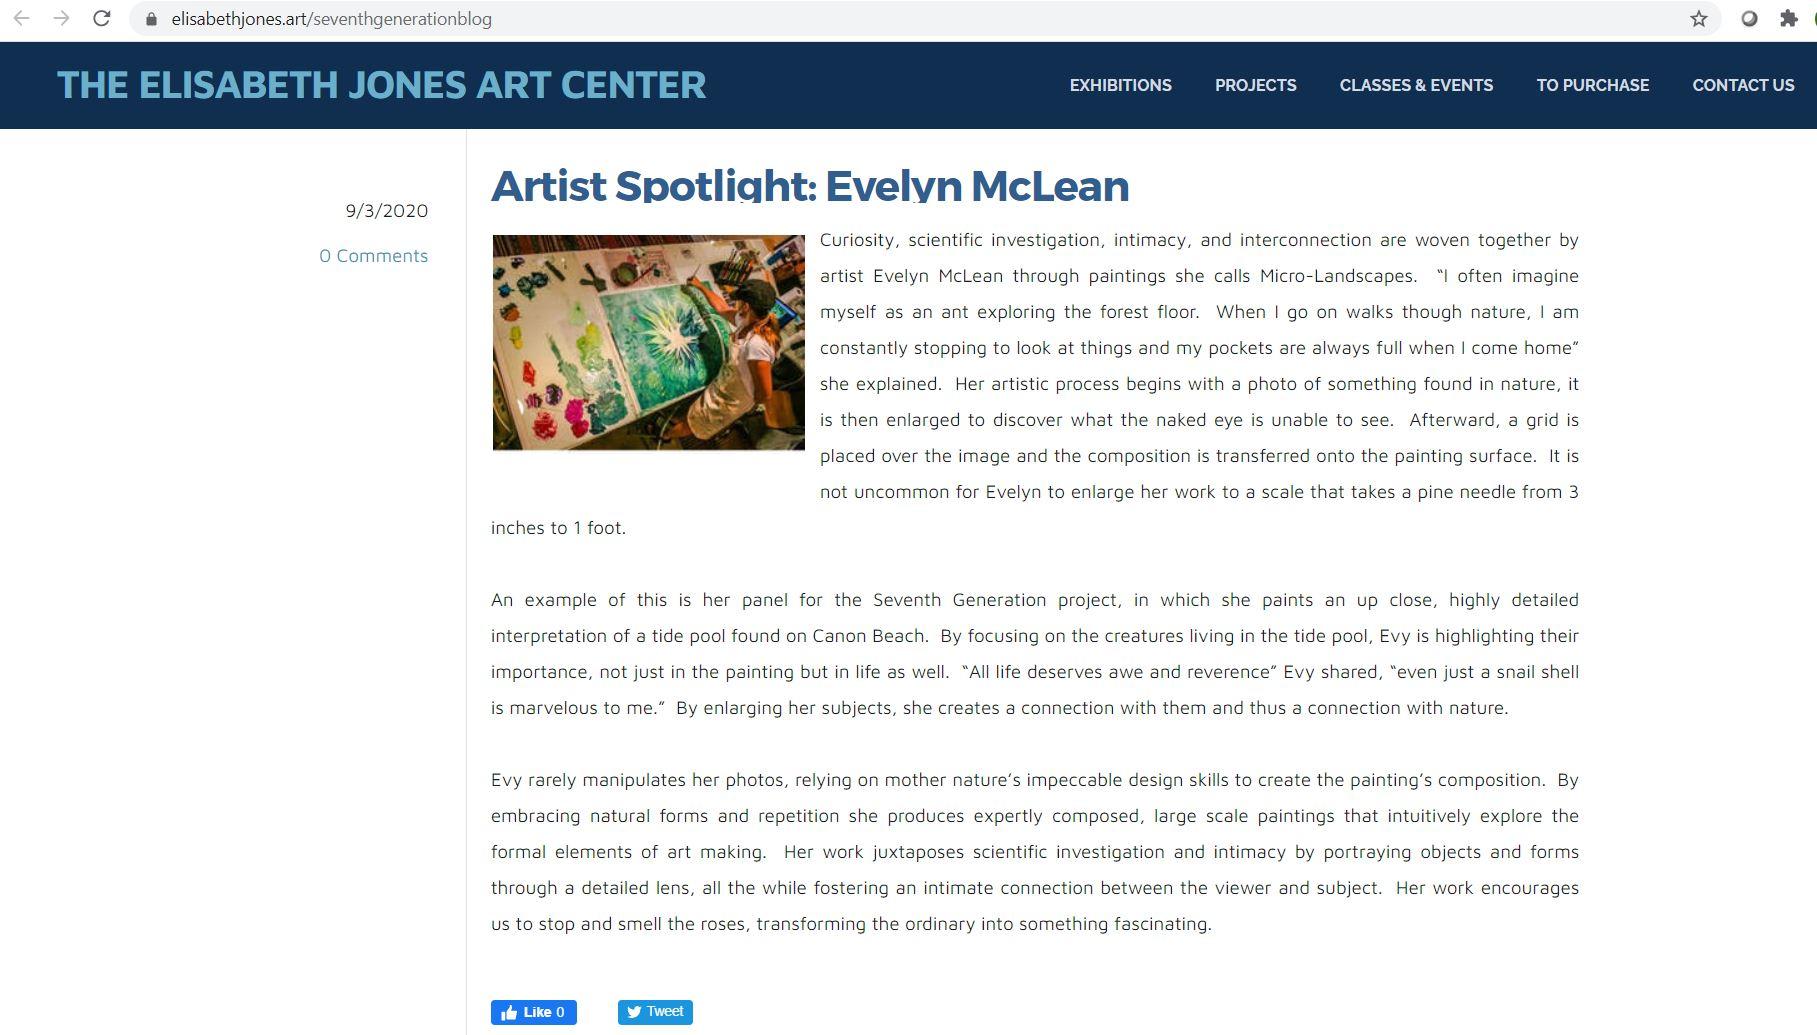 Artist Spotlight write-up for Mrs. McLean